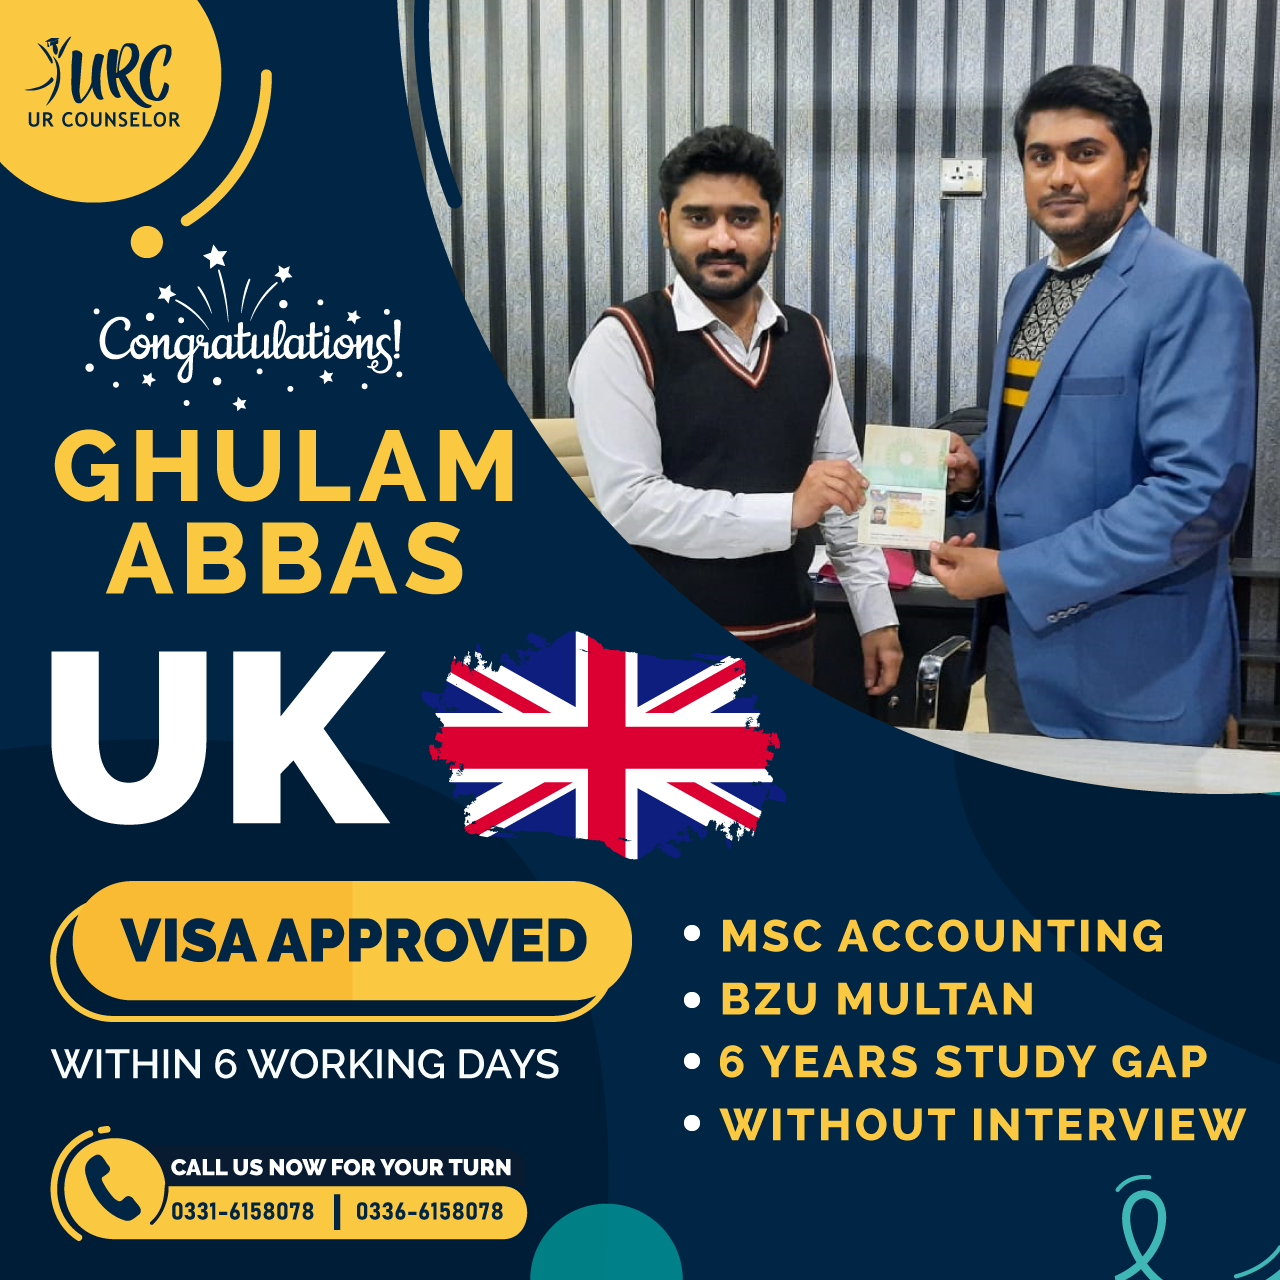 UK Visa Approved